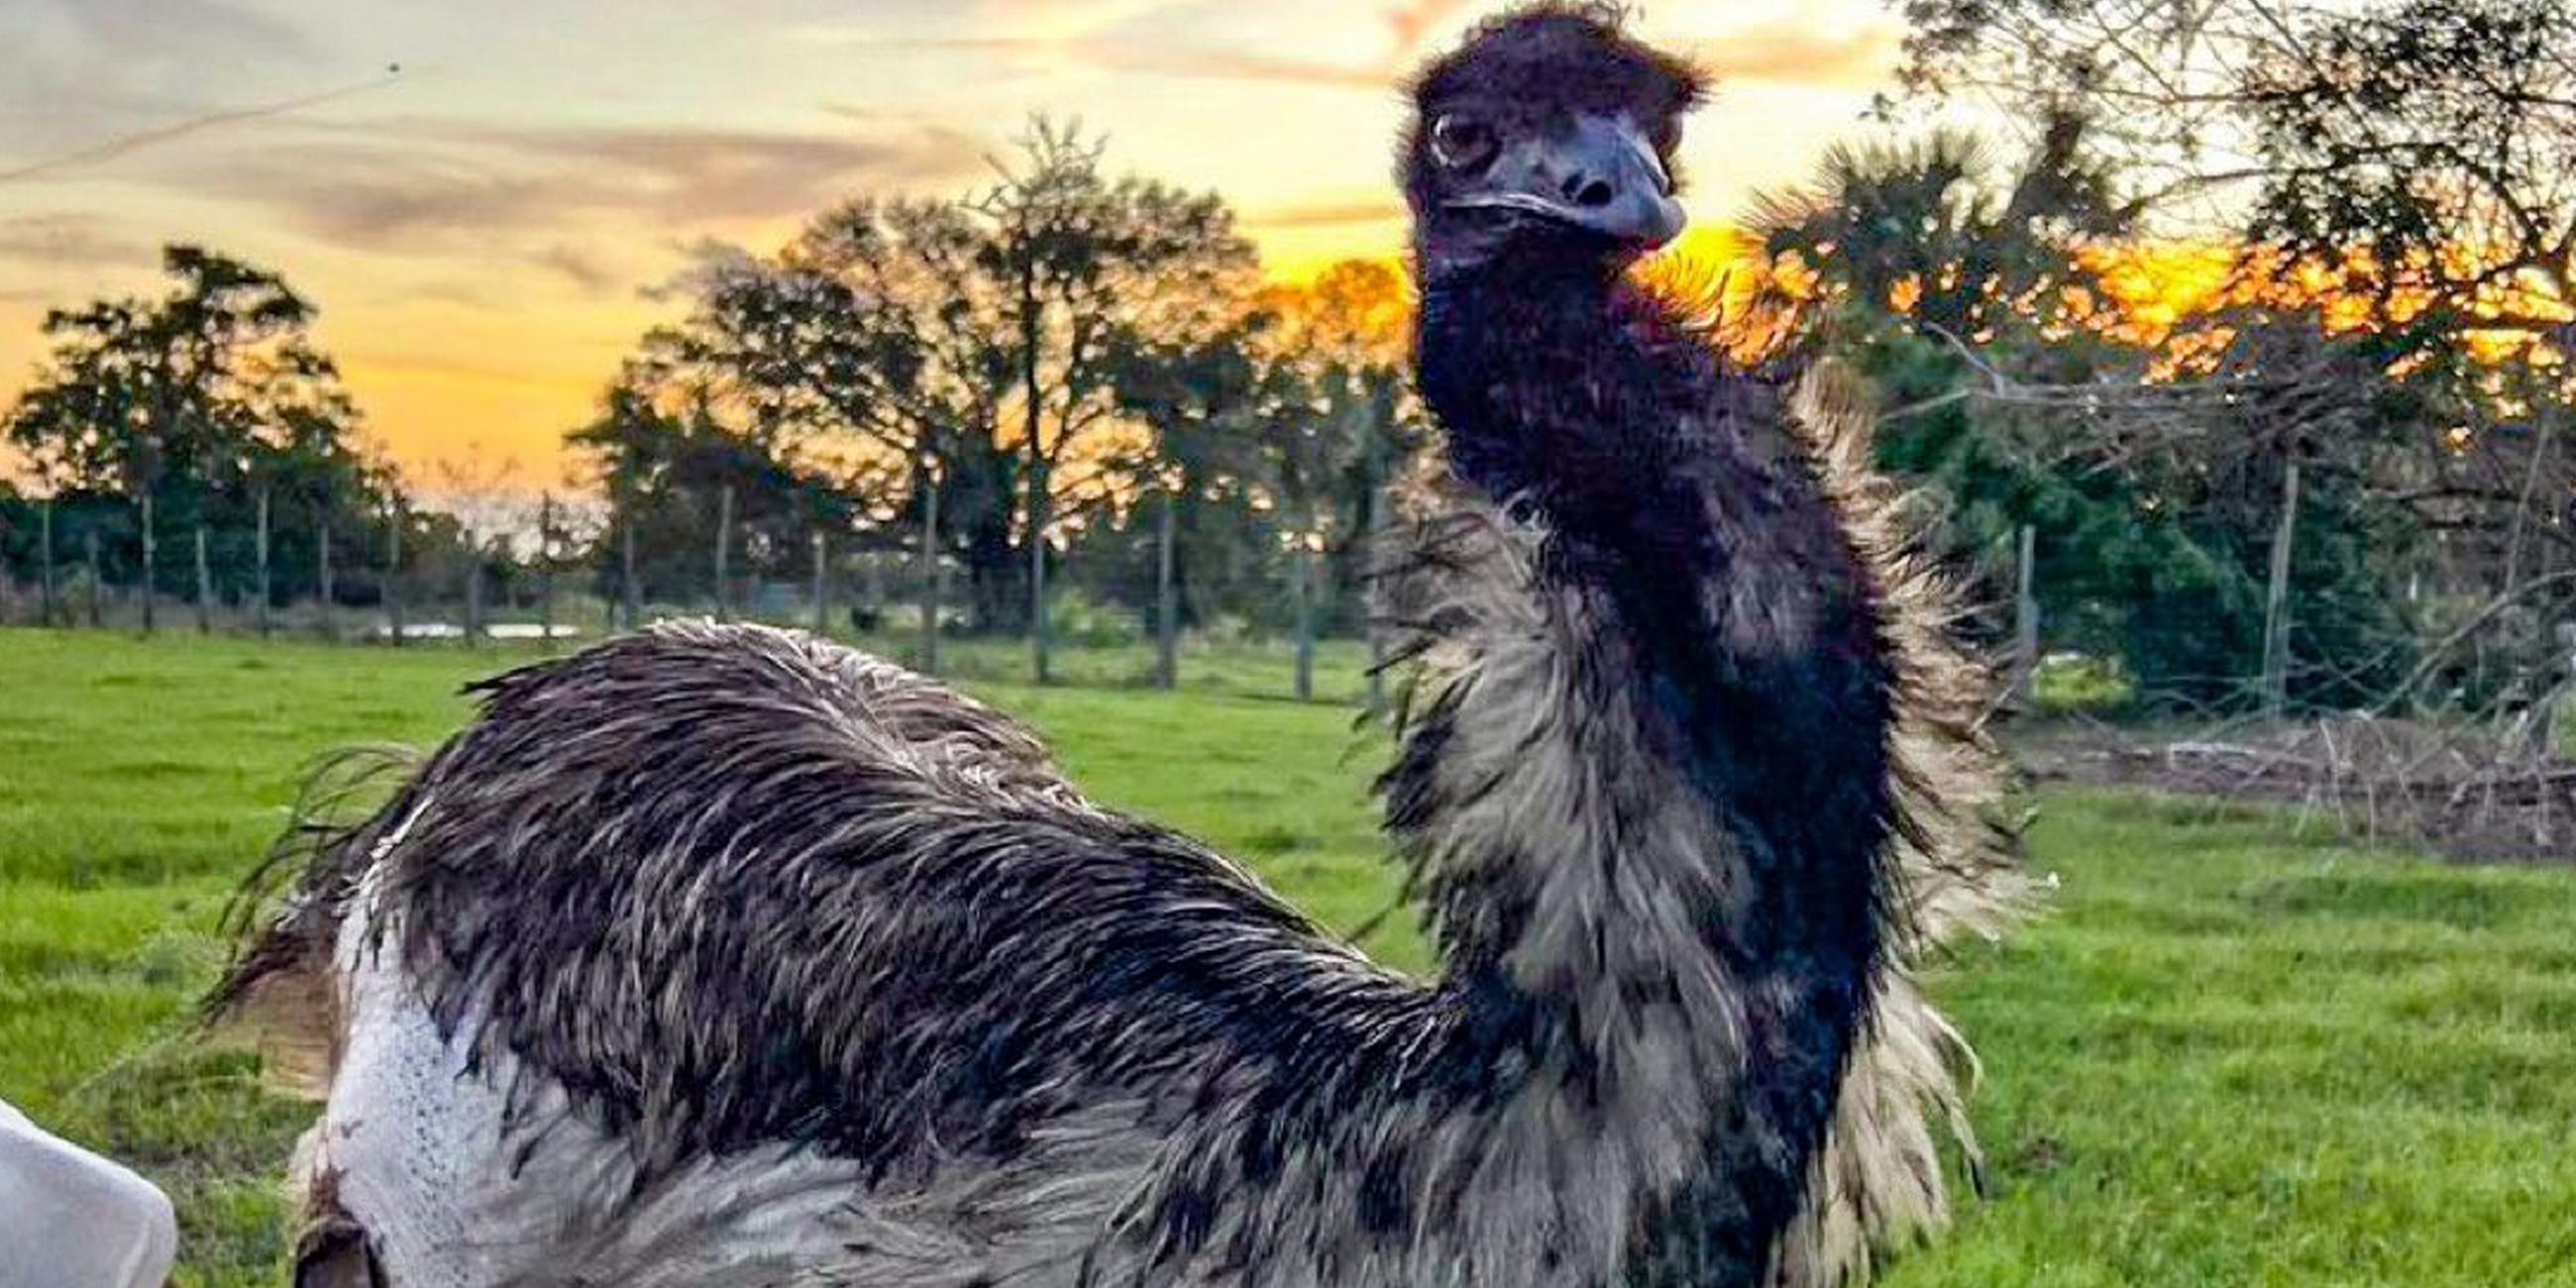 Der Emu Emmanuel war Ziel einer Desinformationskampagne von Team Jorge.